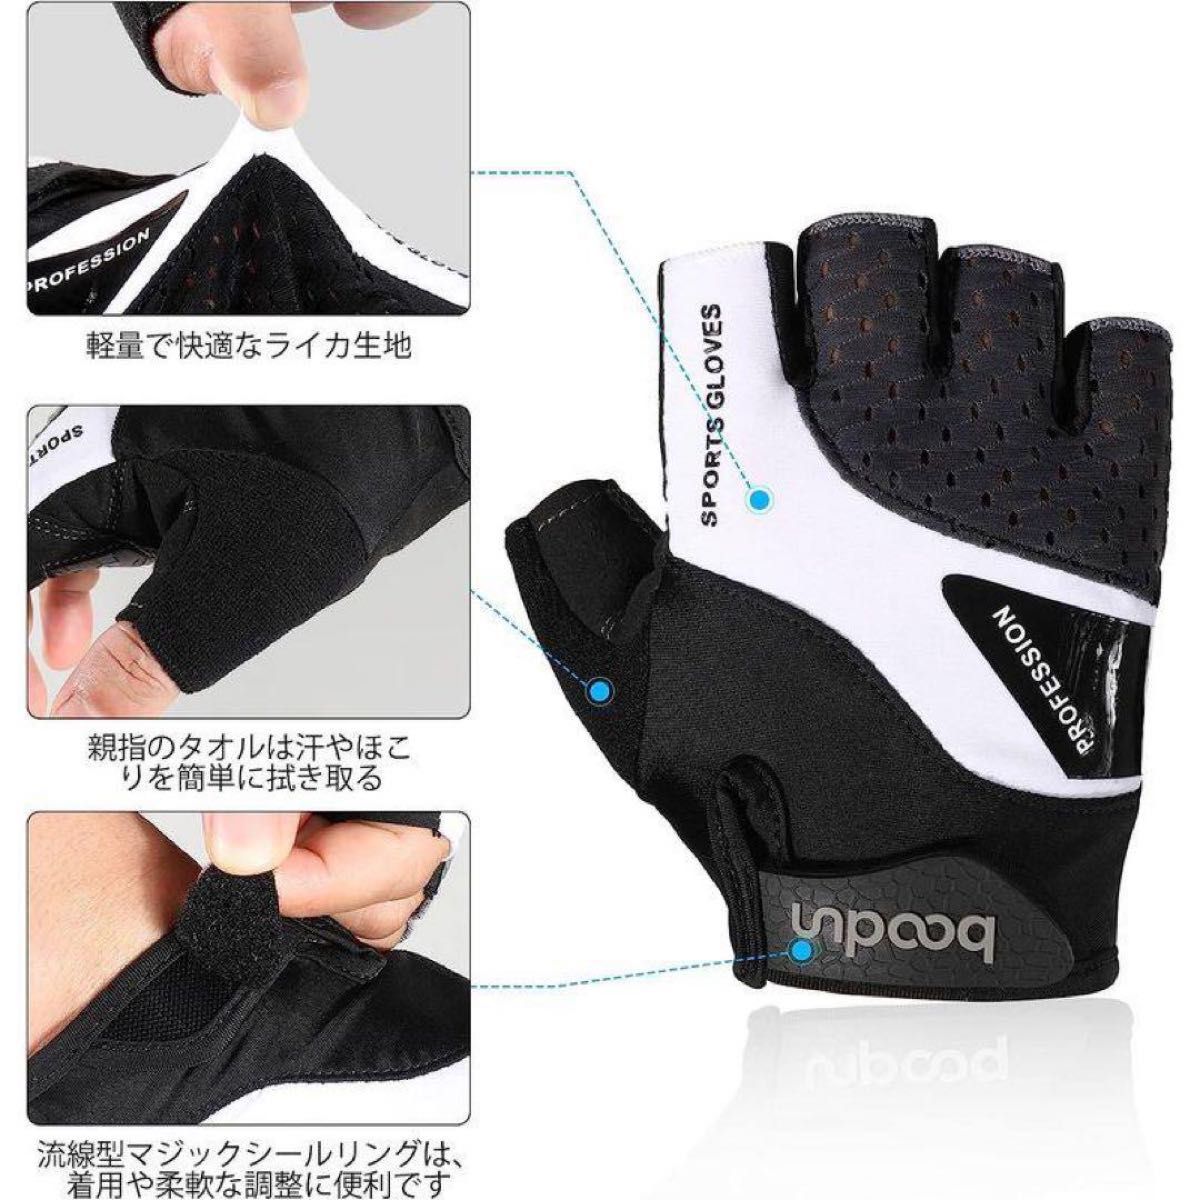 自転車グローブ 夏 3Dパッド付 サイクルグローブ 指切り手袋 サイクリンググローブ 耐磨耗性 換気性 滑り止め付 男女兼用 XL